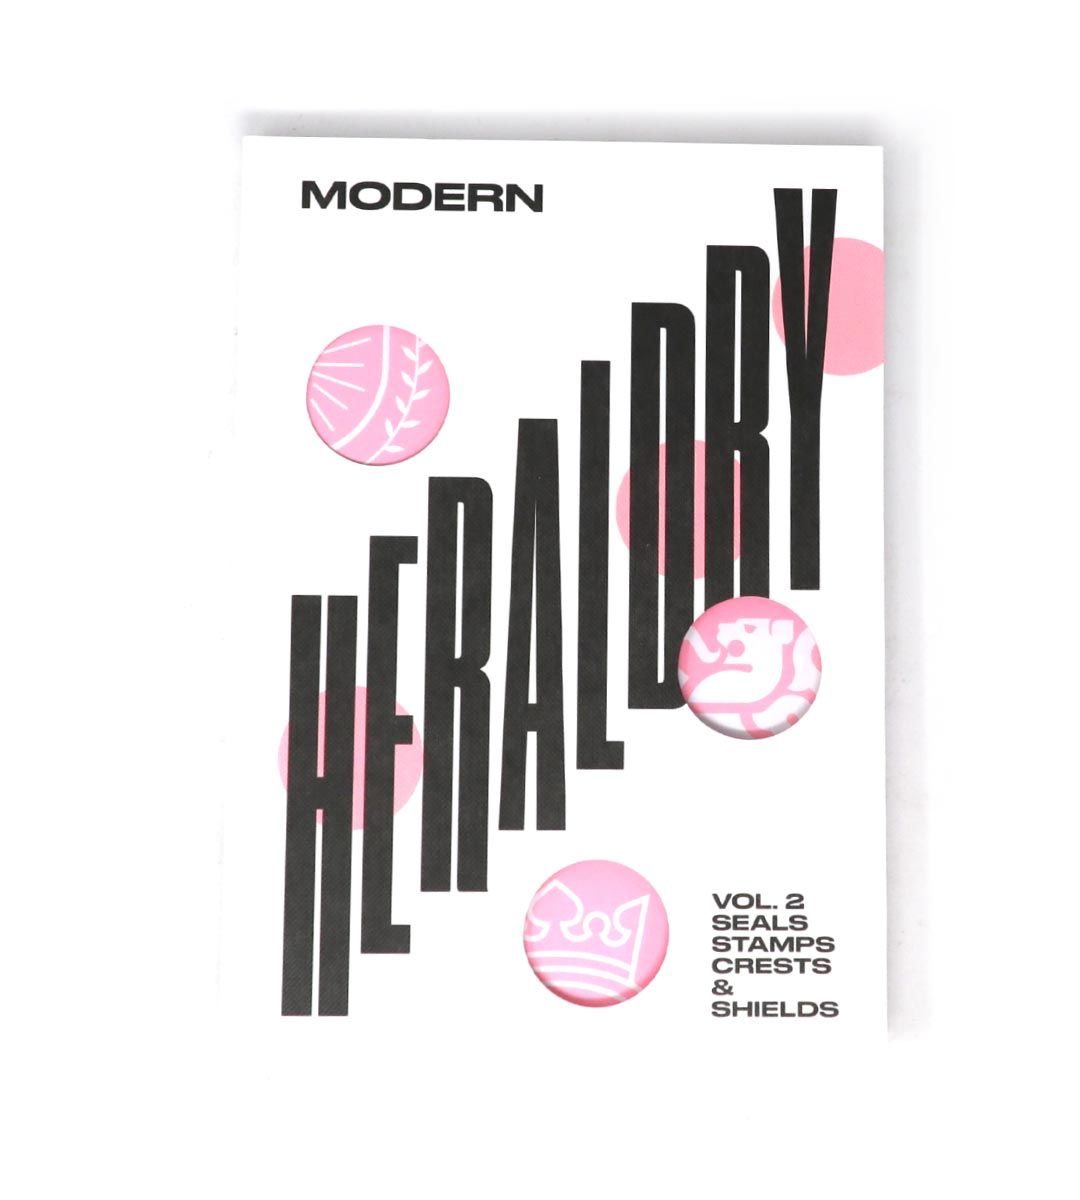 Modern Heraldry Vol.2